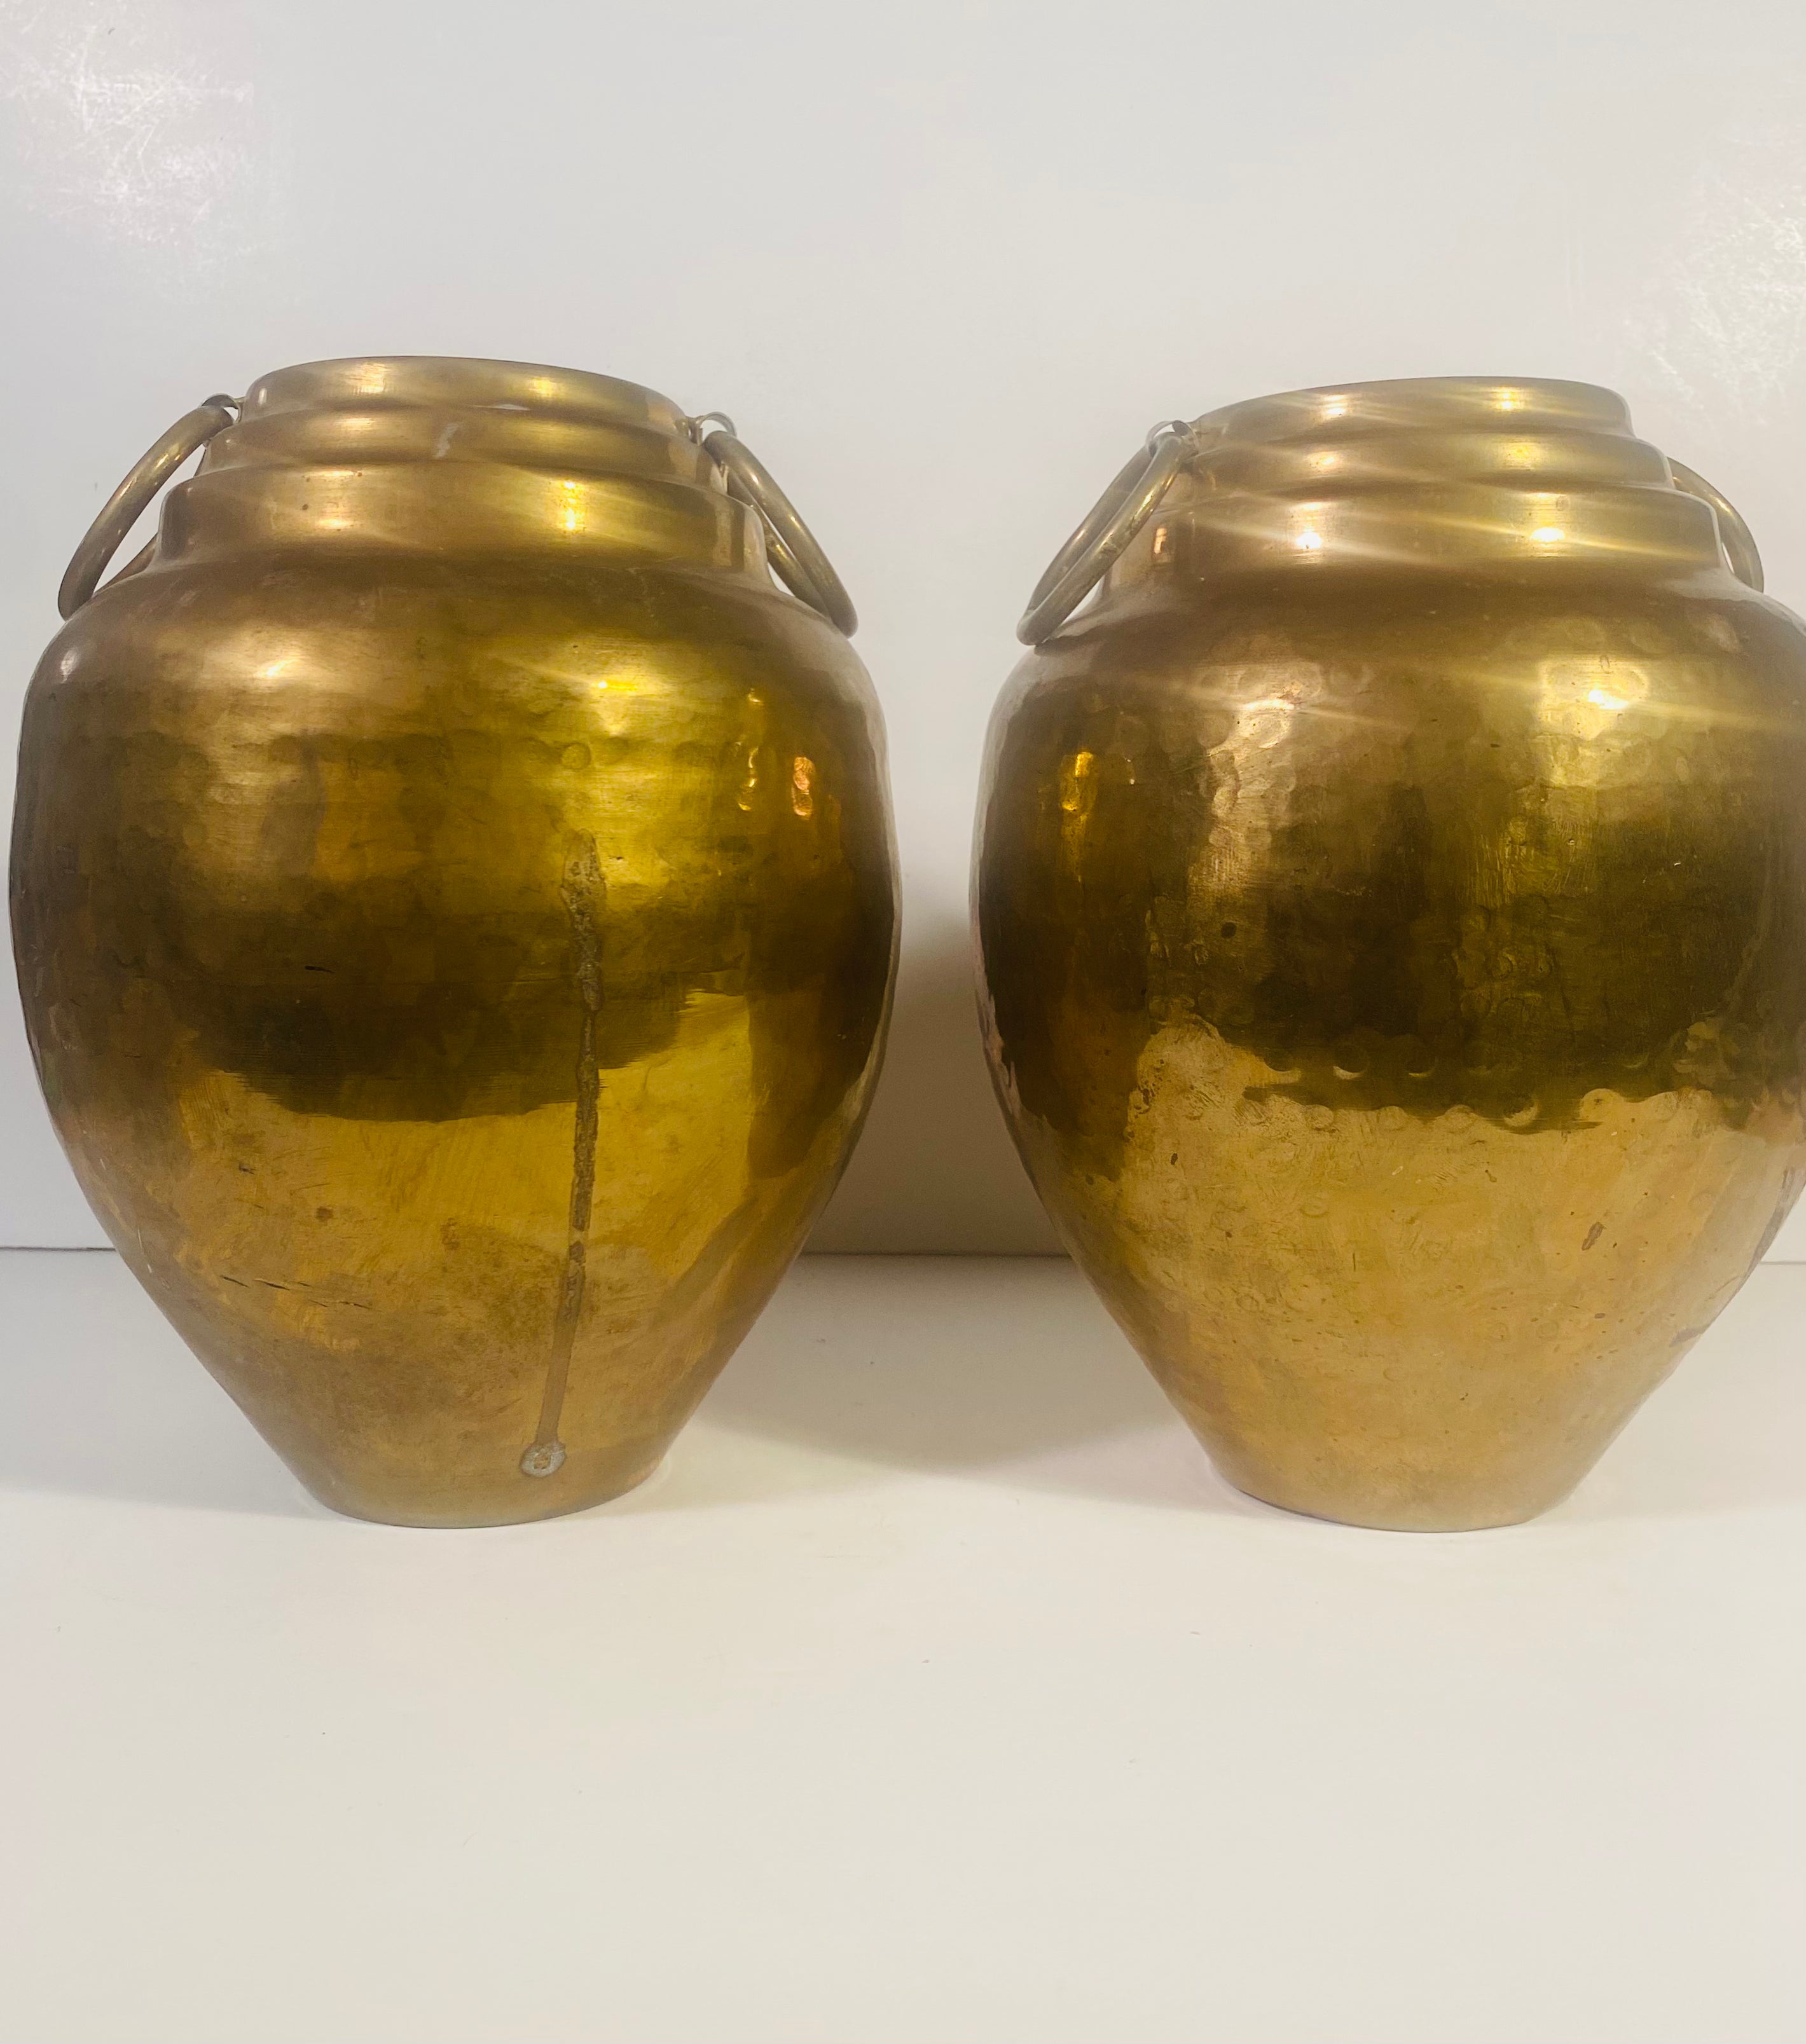 Vintage Hammered Brass Vase Planter With Side Ring Detail